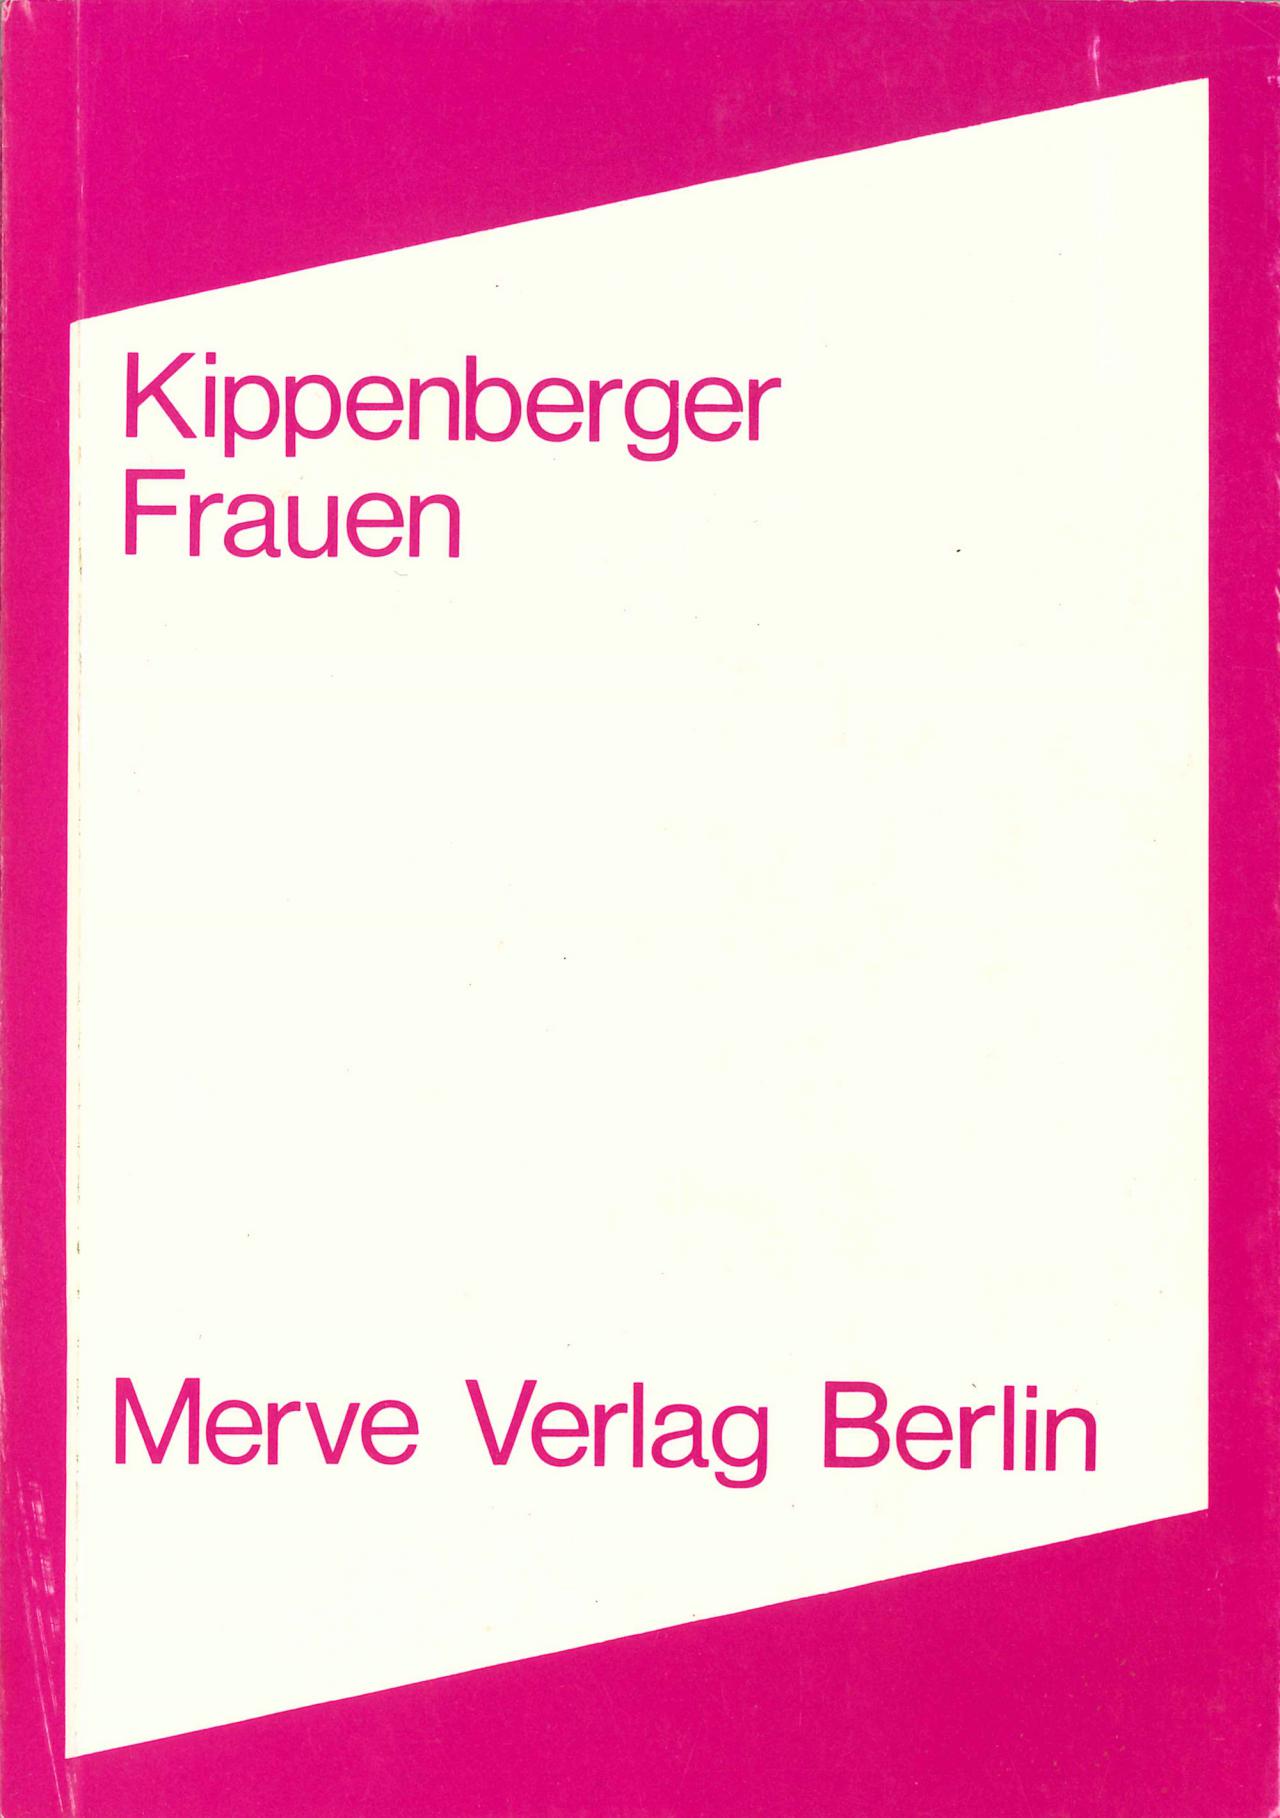 Martin Kippenberger: Frauen, Berlin 1980.